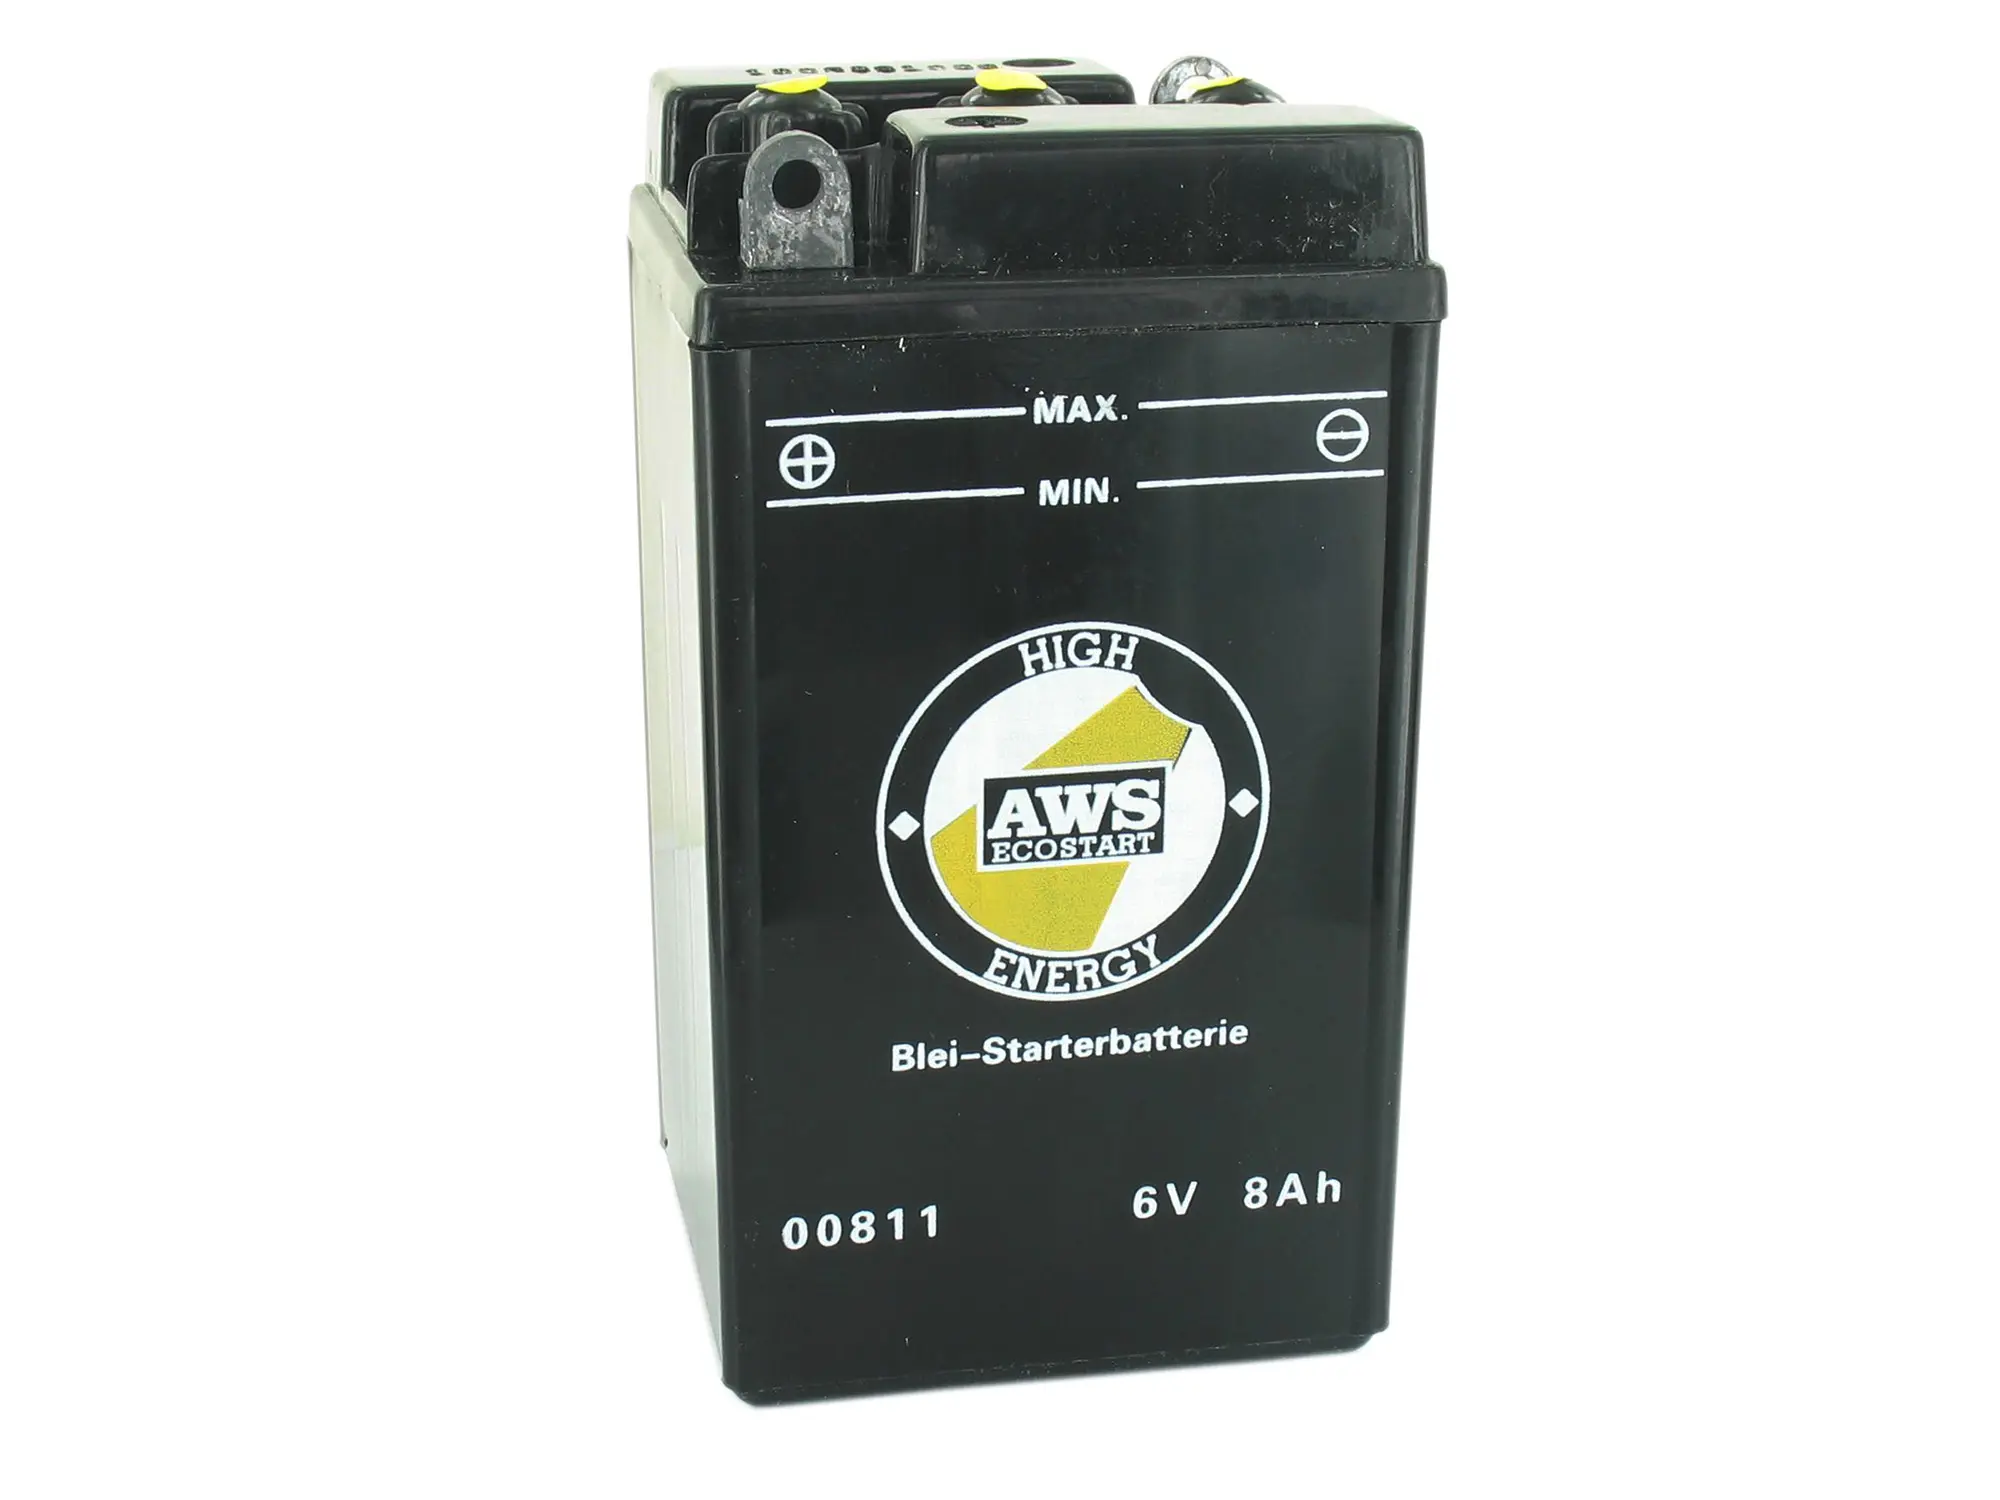 Batterie 6V 8Ah AWS (ohne Säure) ohne Deckel - für MZ ES, RT, BK350, - Simson AWO - IWL Pitty, SR56 Wiesel, SR59 Berlin, Art.-Nr.: GP10068541 - Bild 1